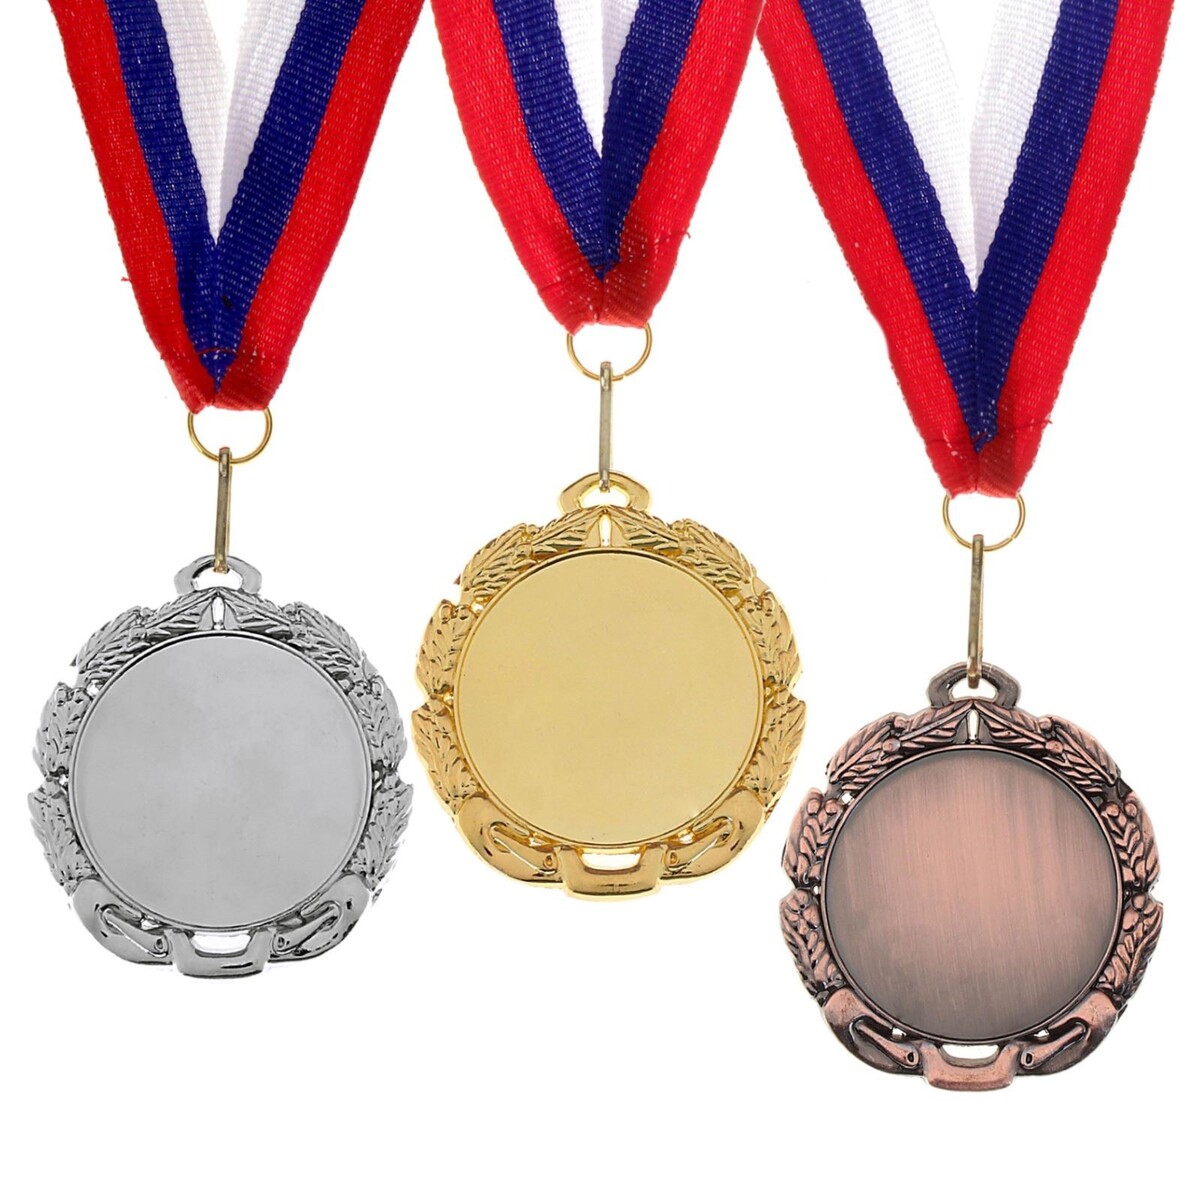 Медаль под нанесение 009 диам 7 см. цвет бронз. с лентой медаль под нанесение 009 диам 7 см зол с лентой